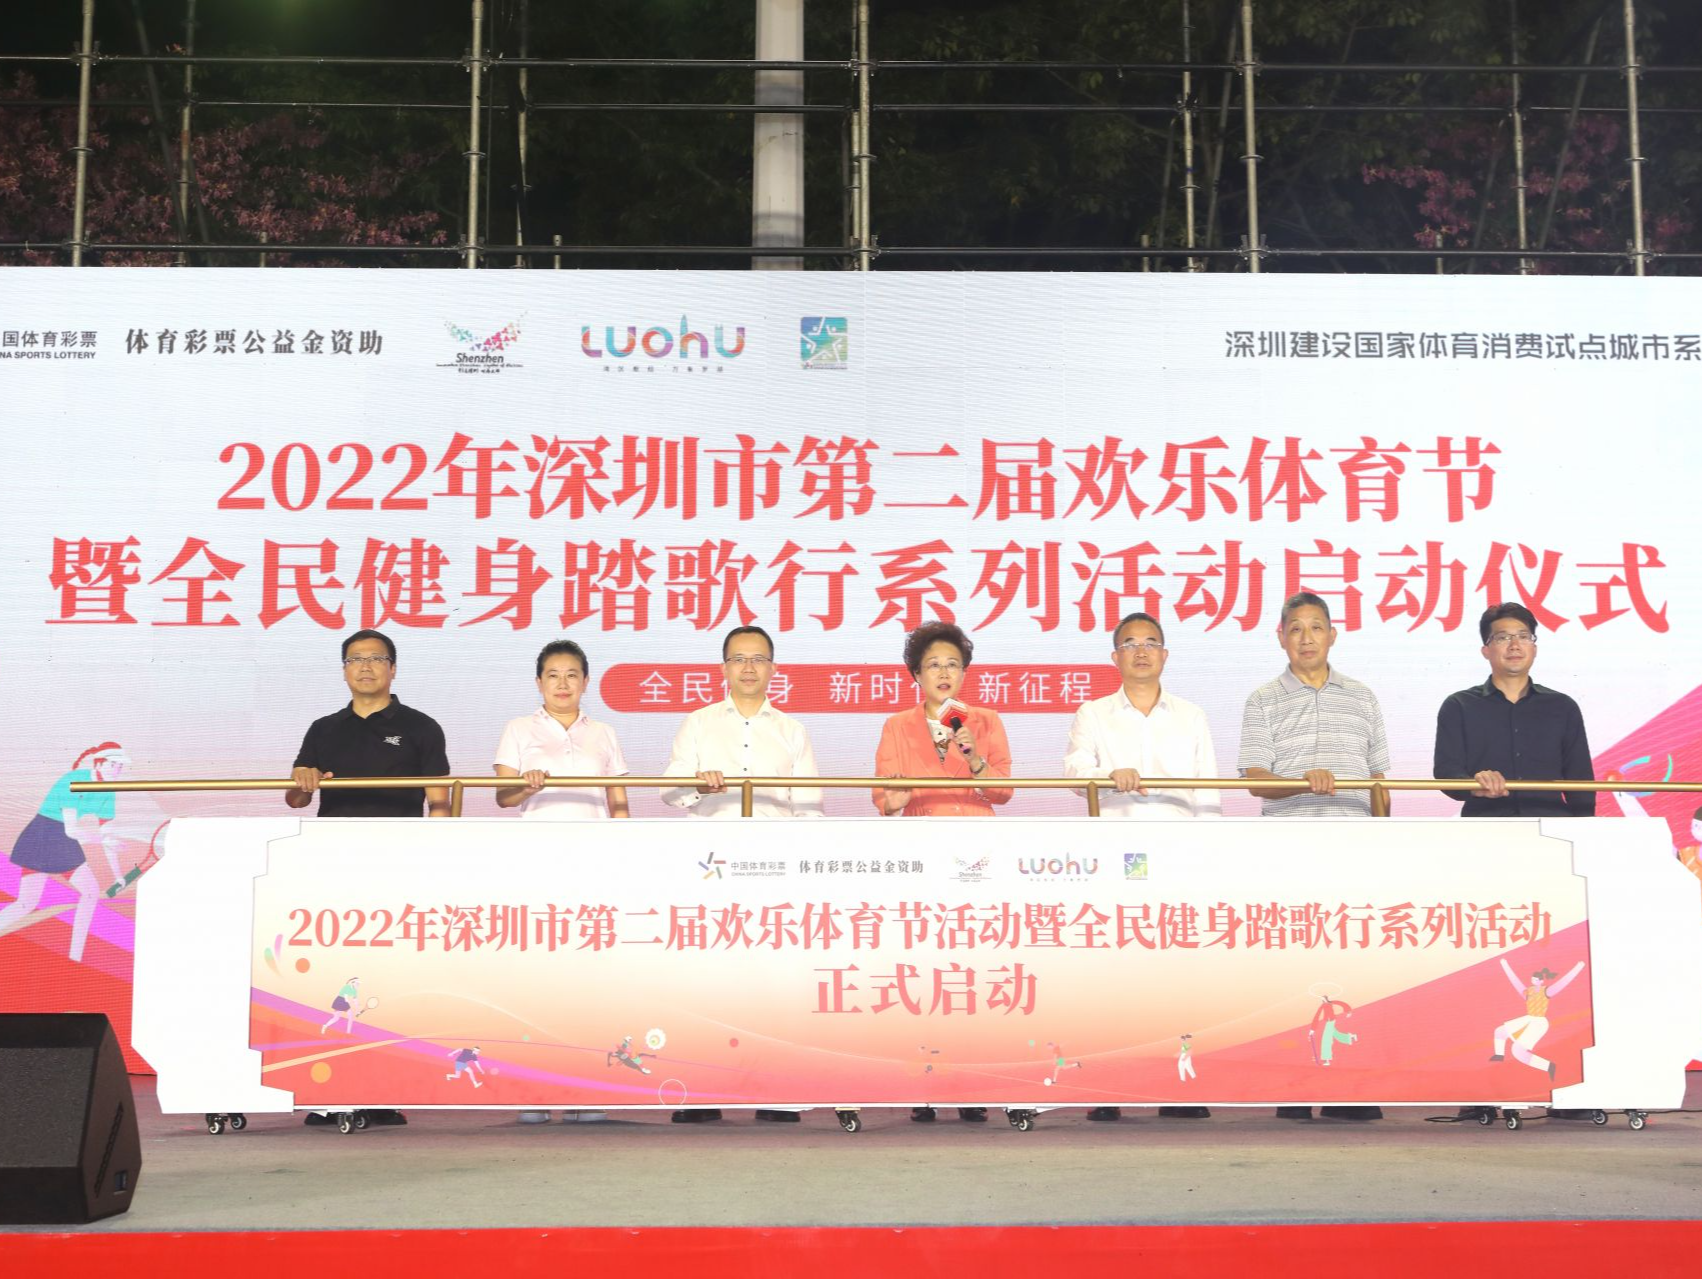 第二届深圳欢乐体育节暨全民健身踏歌行系列活动开幕